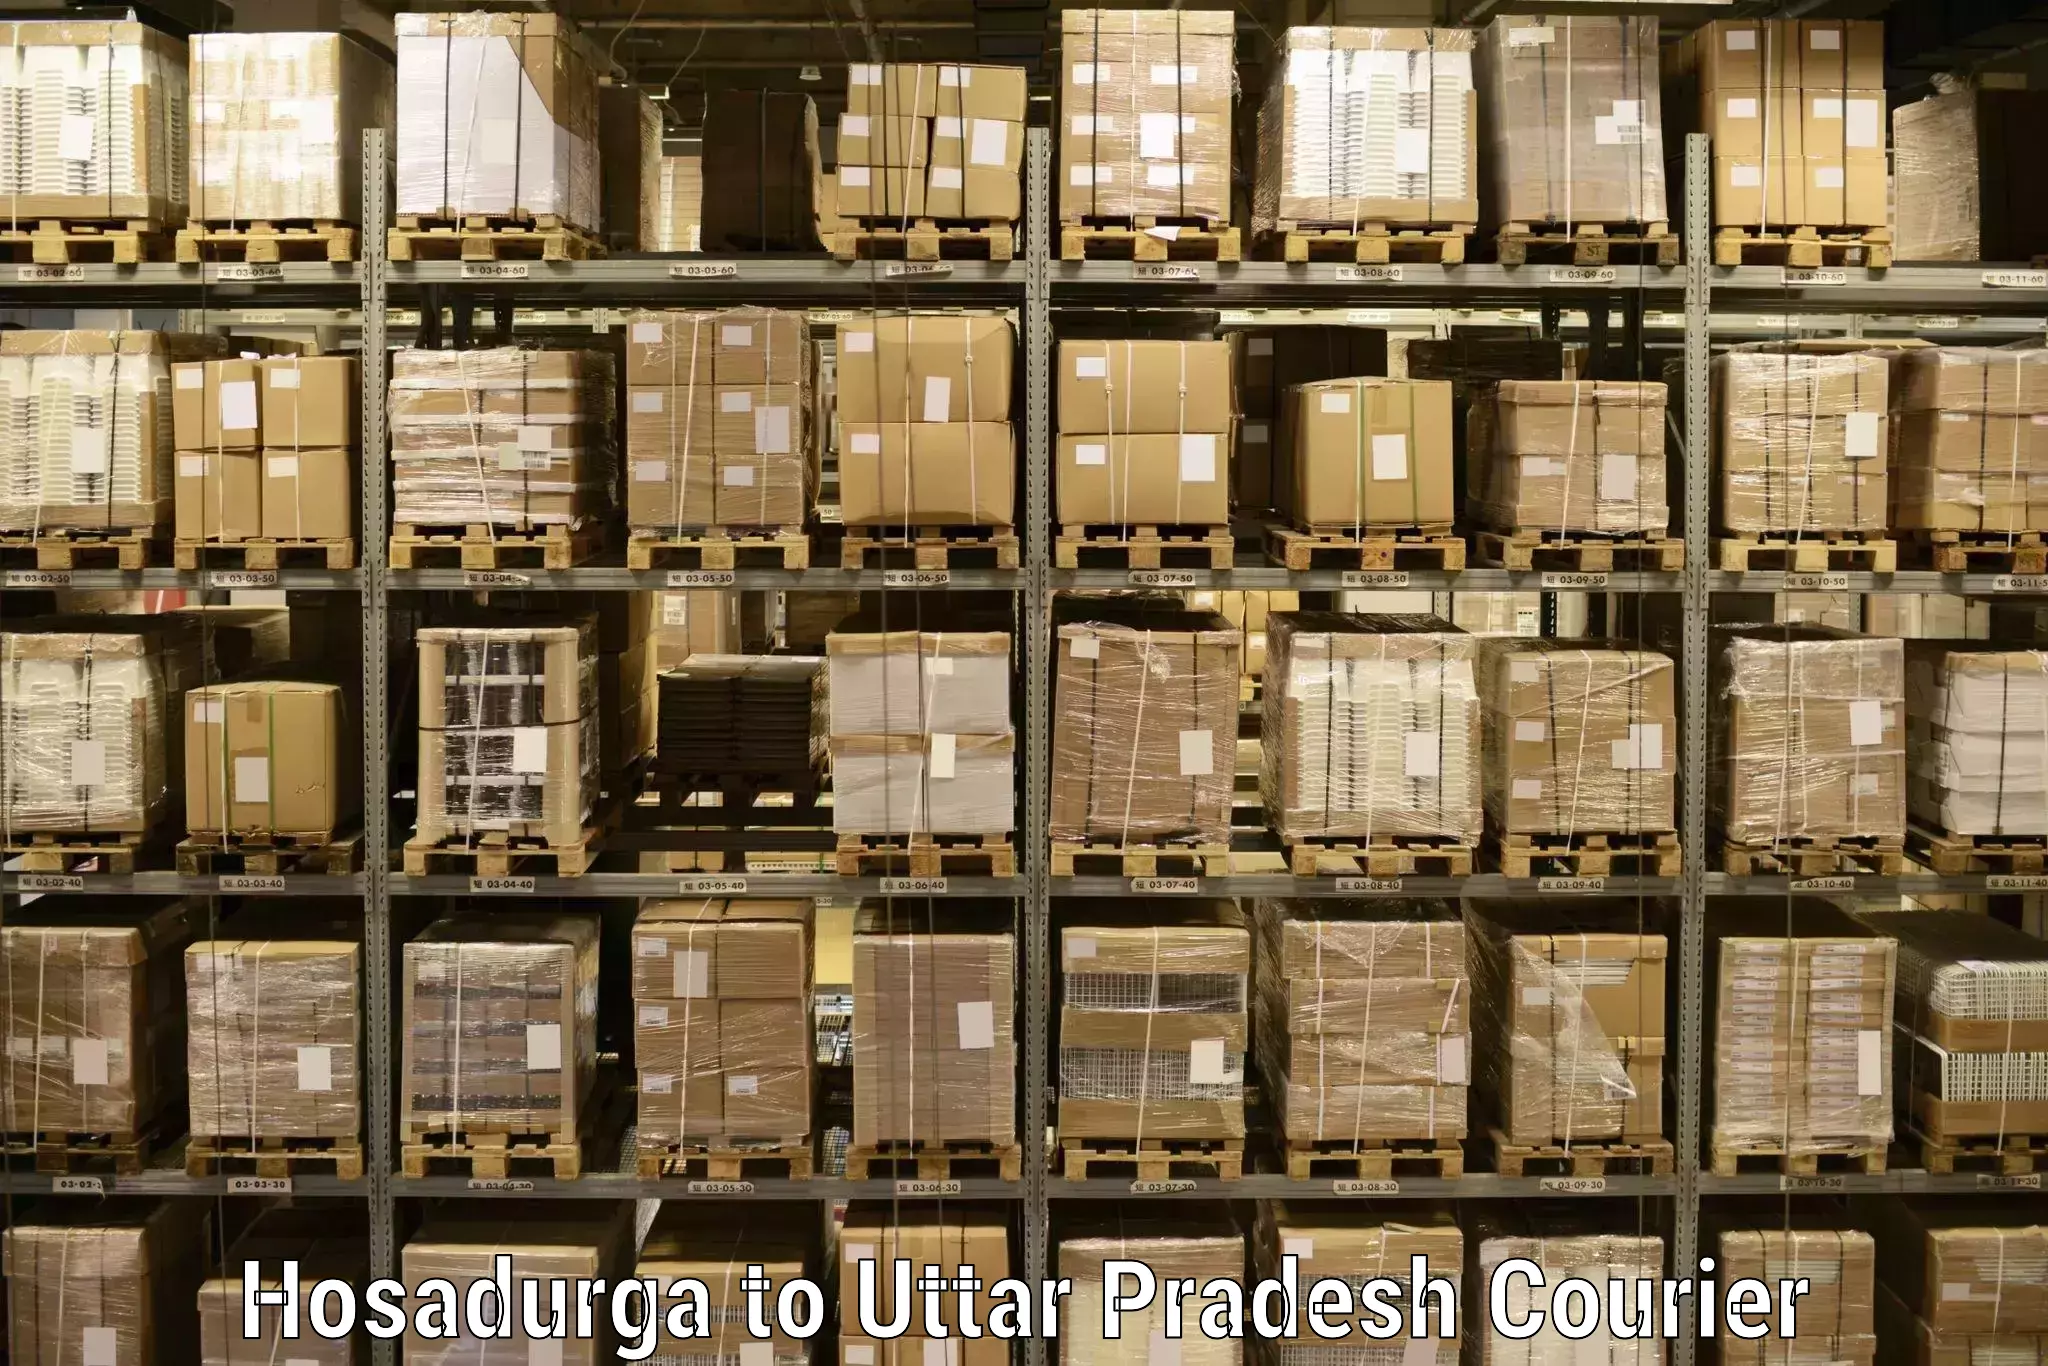 Flexible parcel services in Hosadurga to Kaptanganj